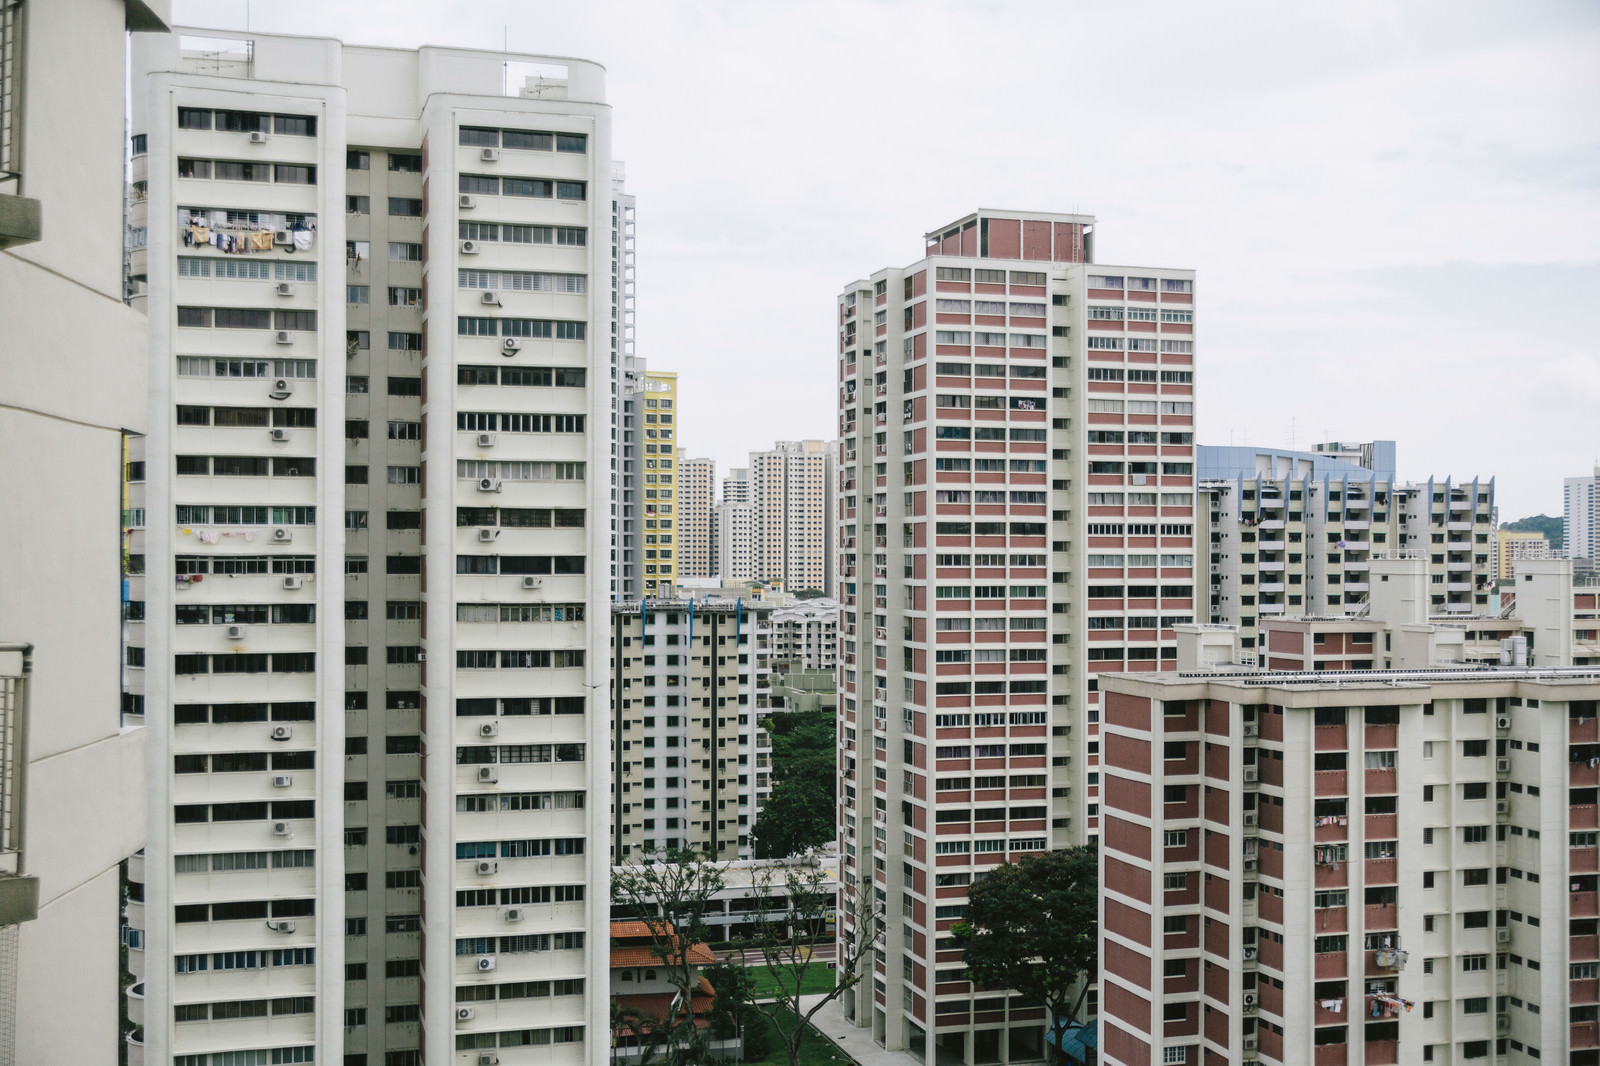 シンガポールの高層マンションの写真 画像 フリー素材 ぱくたそ